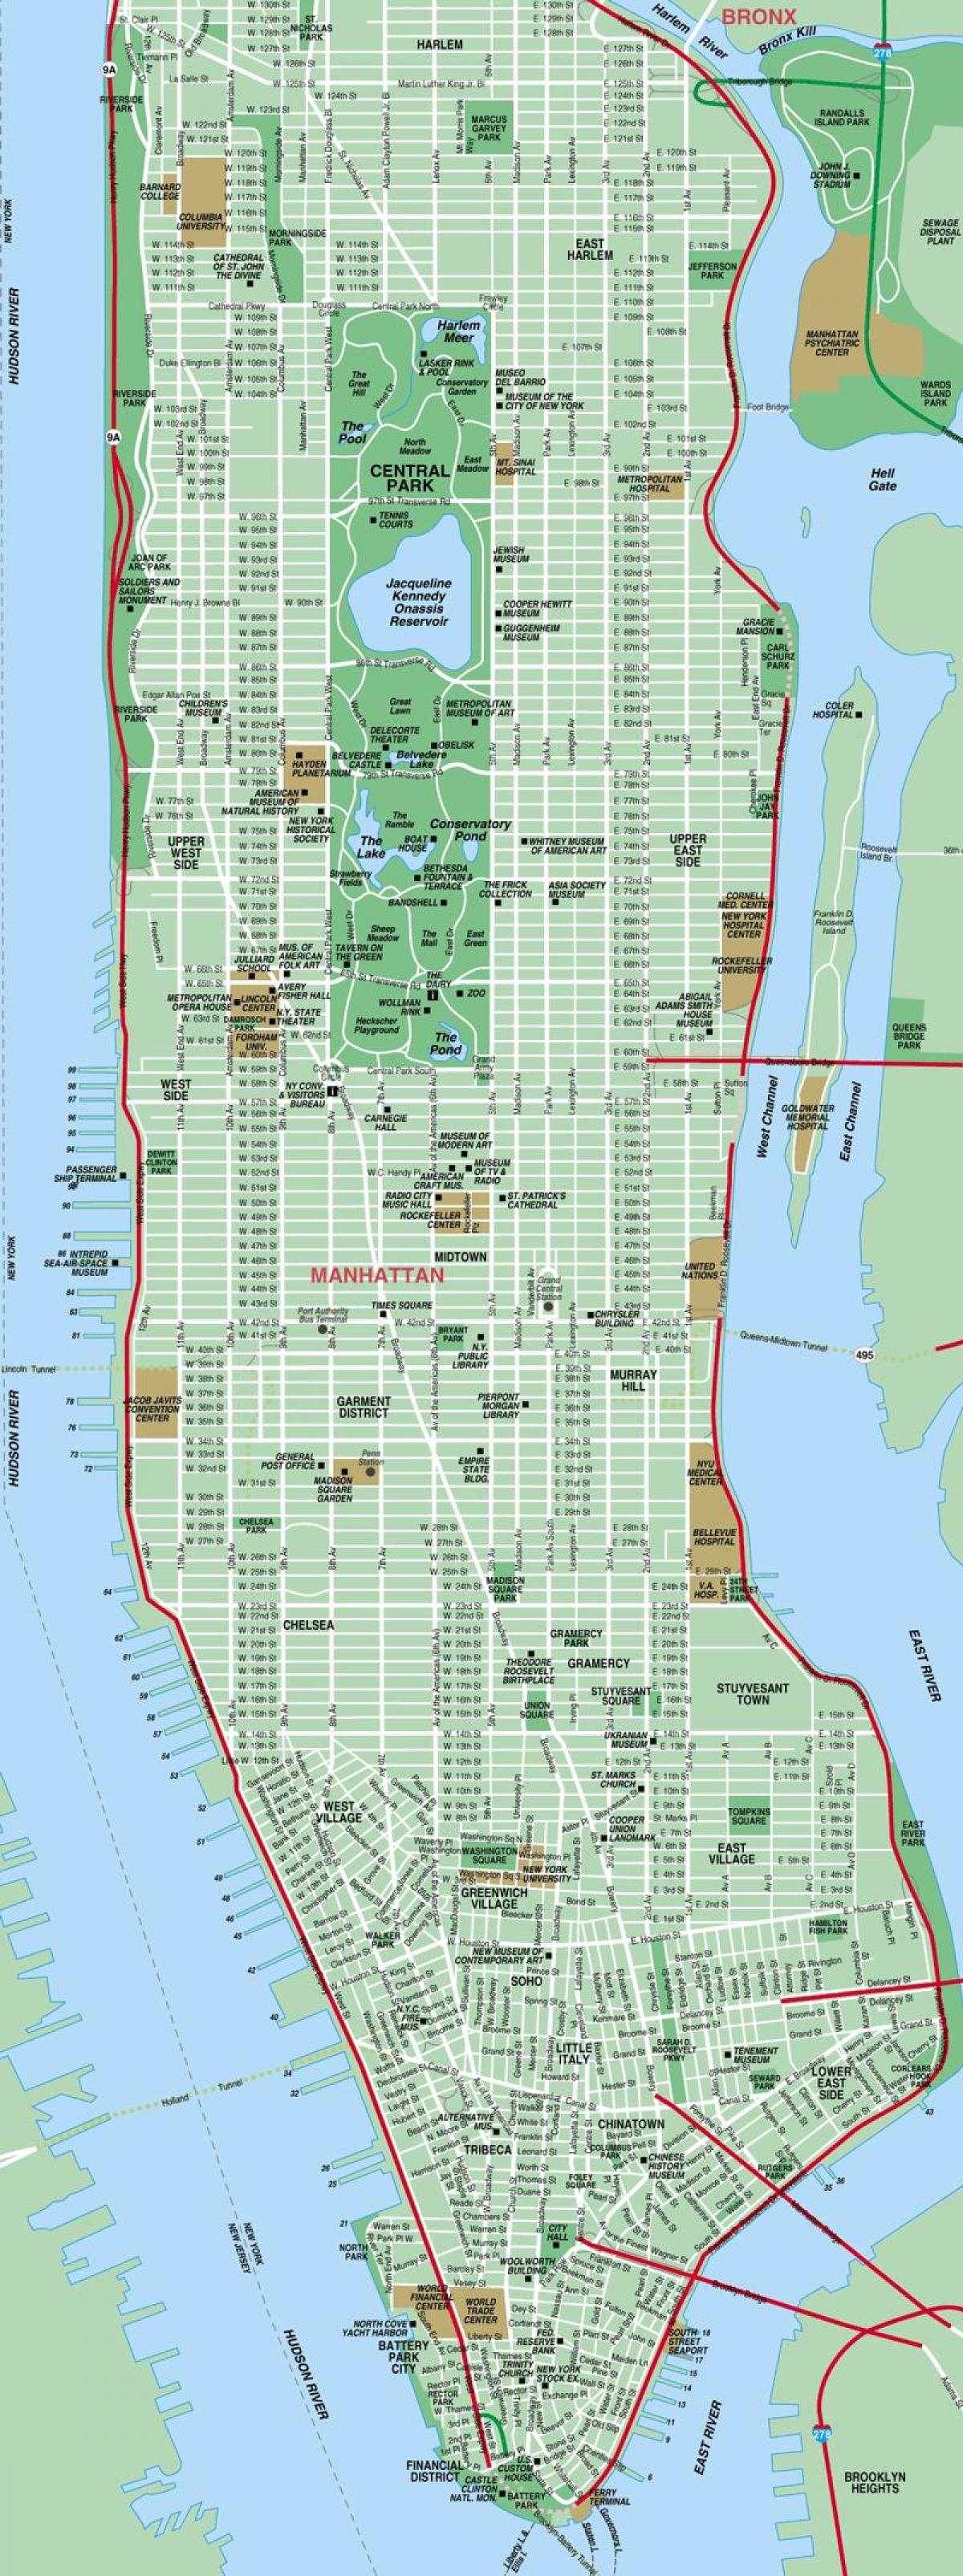 Manhattan tiet kartta